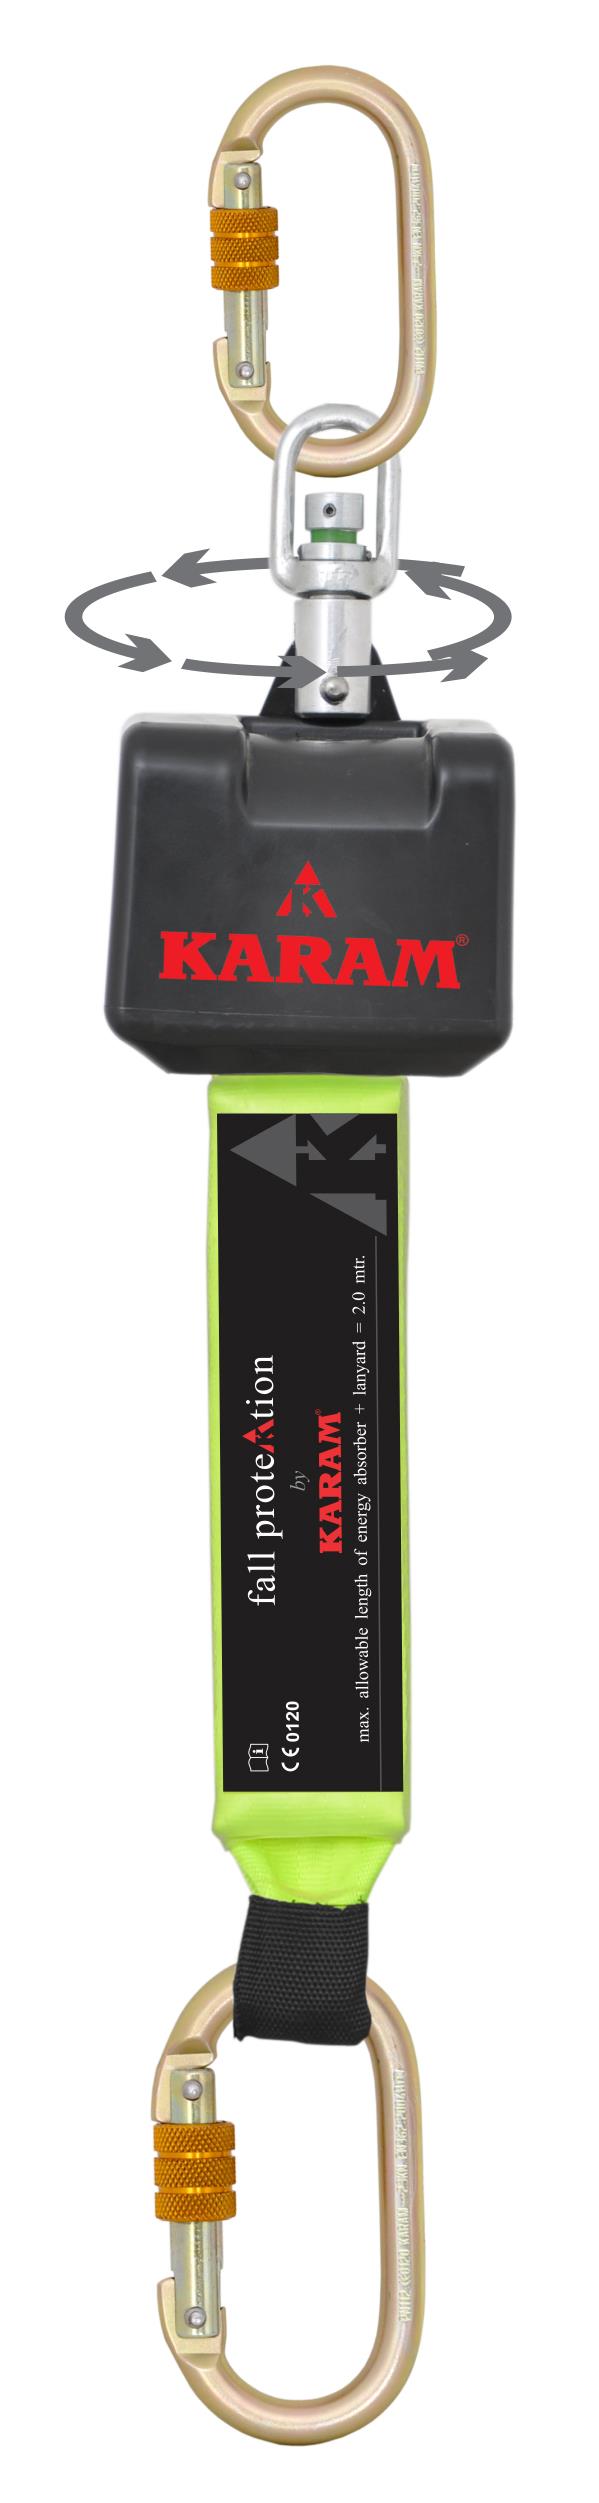 อุปกรณ์ป้องกันการตก Karam PN-2002(SW),อุปกรณ์ป้องกันการตก,Karam,Plant and Facility Equipment/Safety Equipment/Fall Protection Equipment